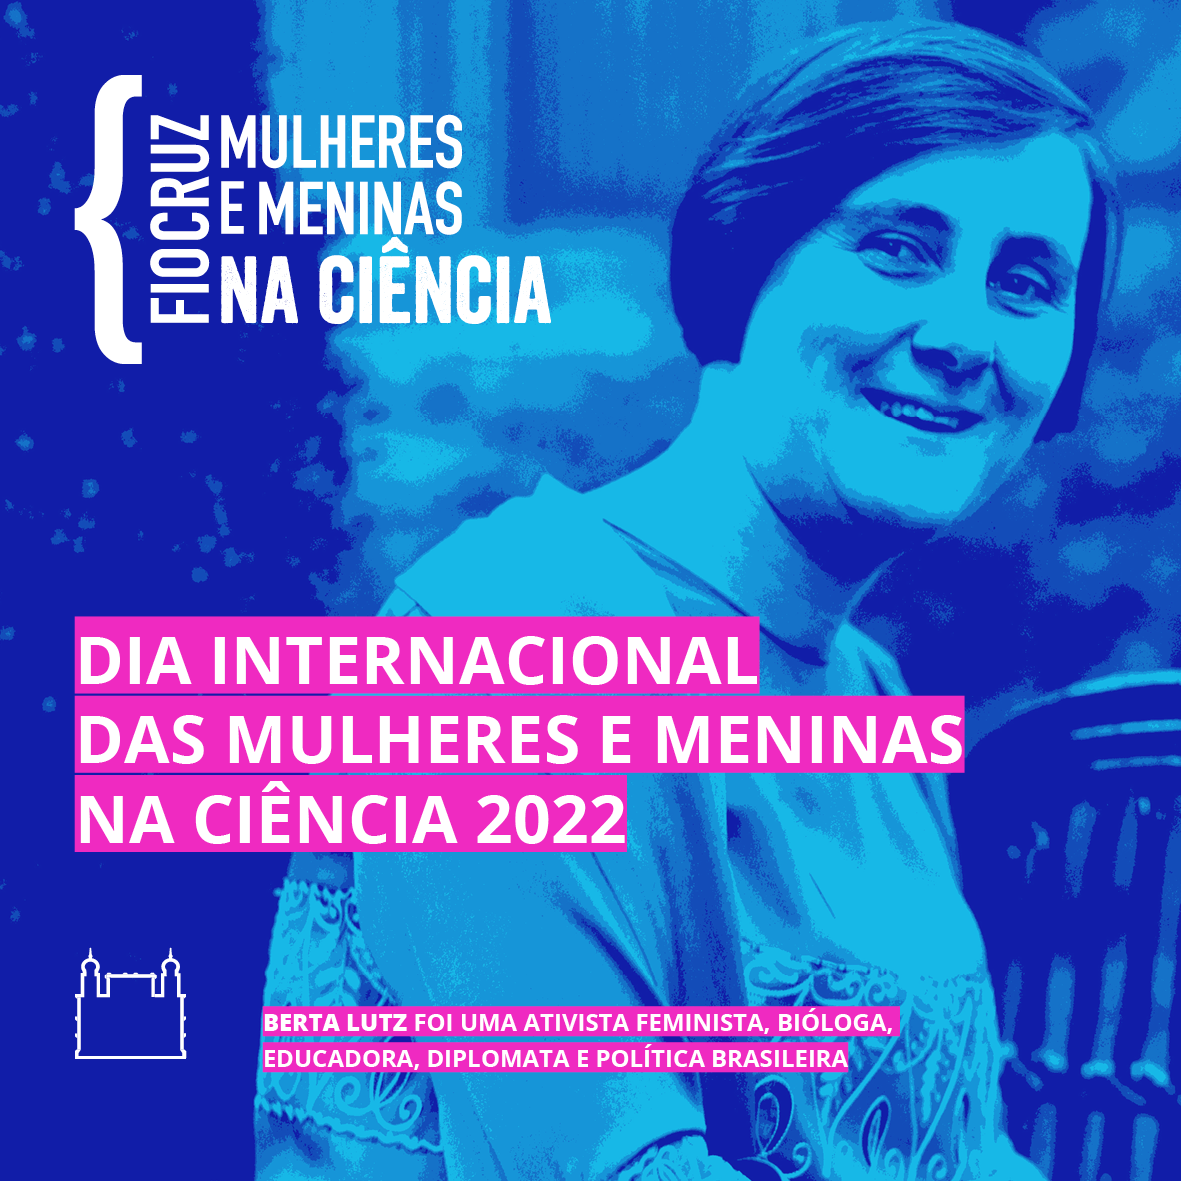 Dia Internacional das Mulheres e Meninas na Ciência: confira a programação completa